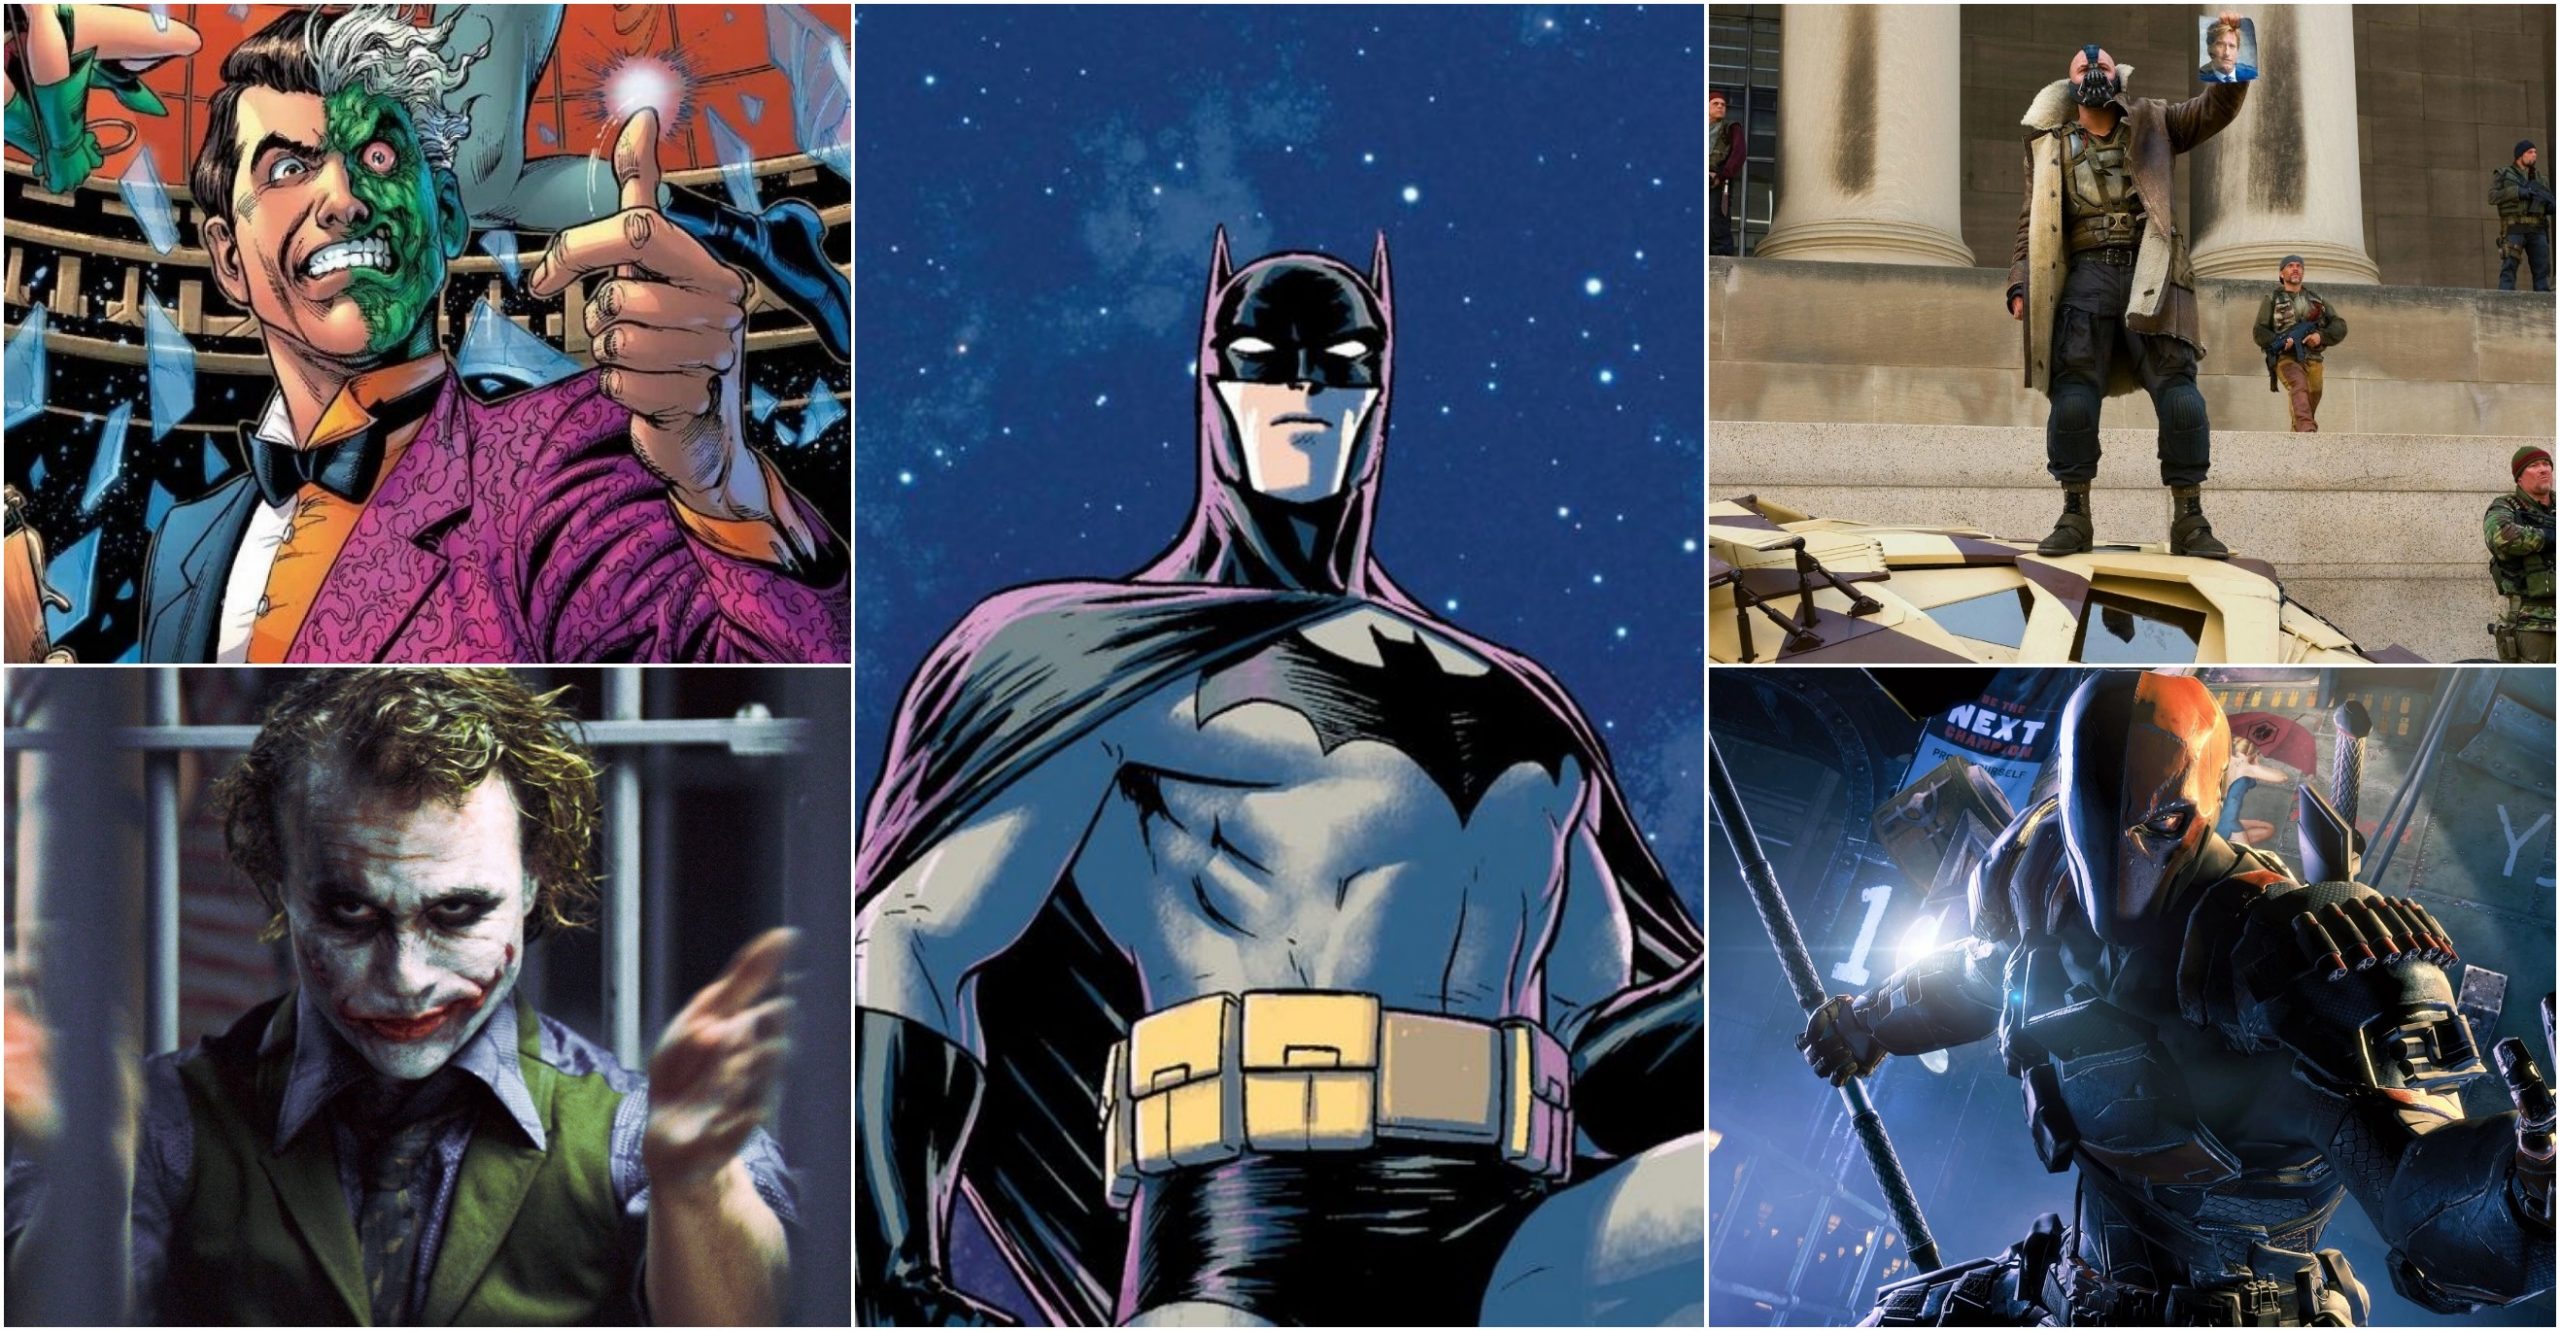 Đây là những kẻ thù vĩ đại nhất của Batman tại Gotham - Joker vẫn là kẻ thù số 1